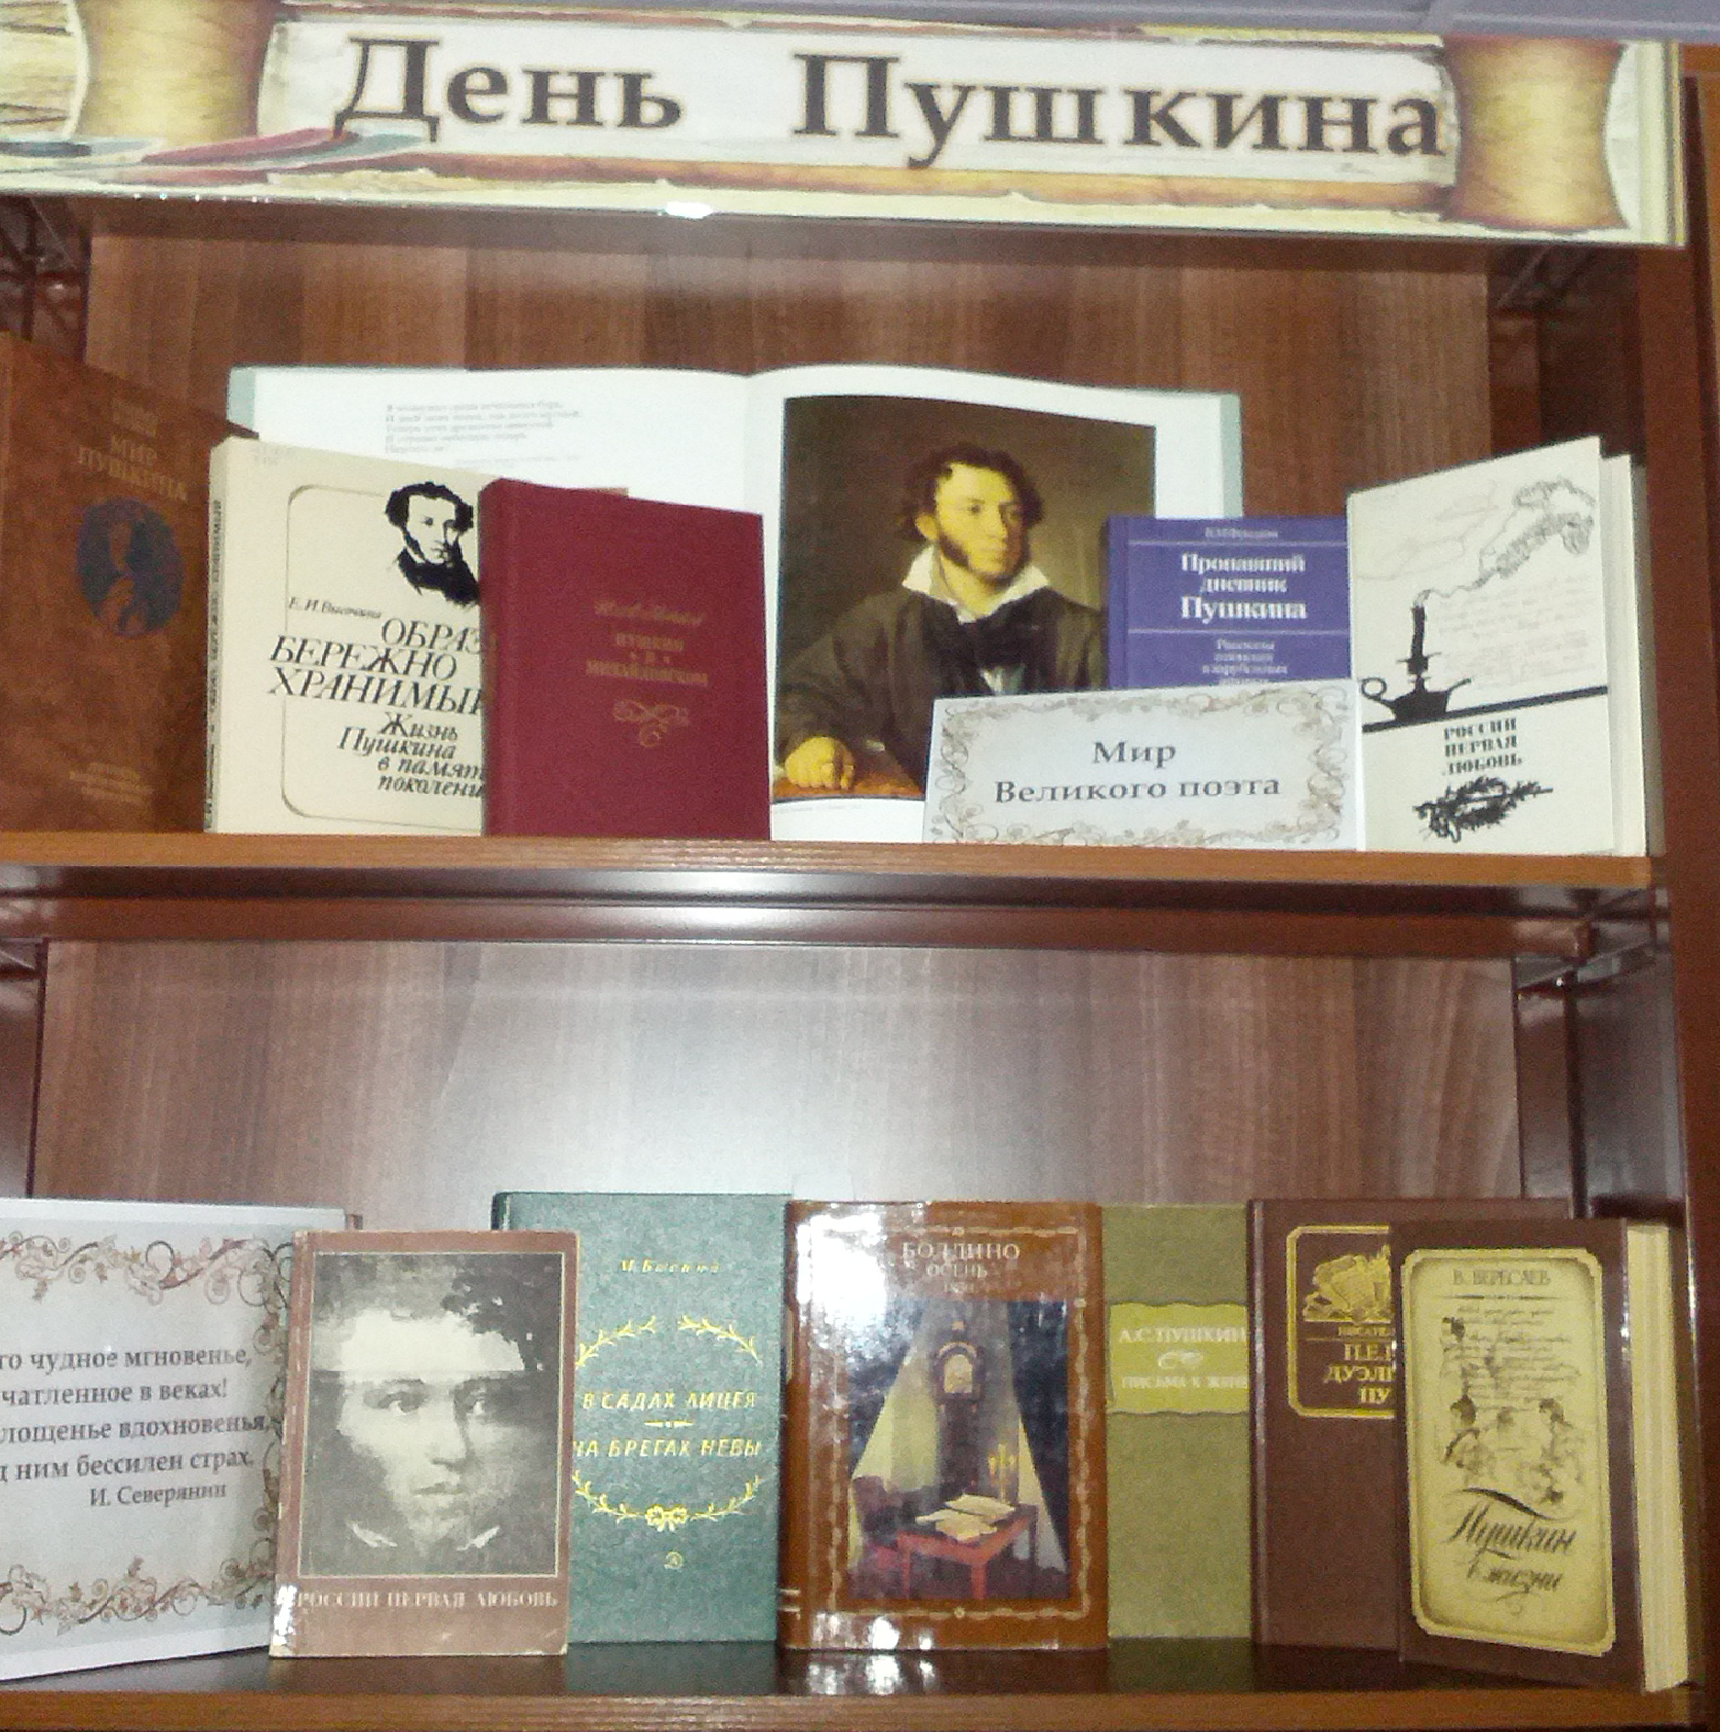 Пушкин книжная выставка в библиотеке